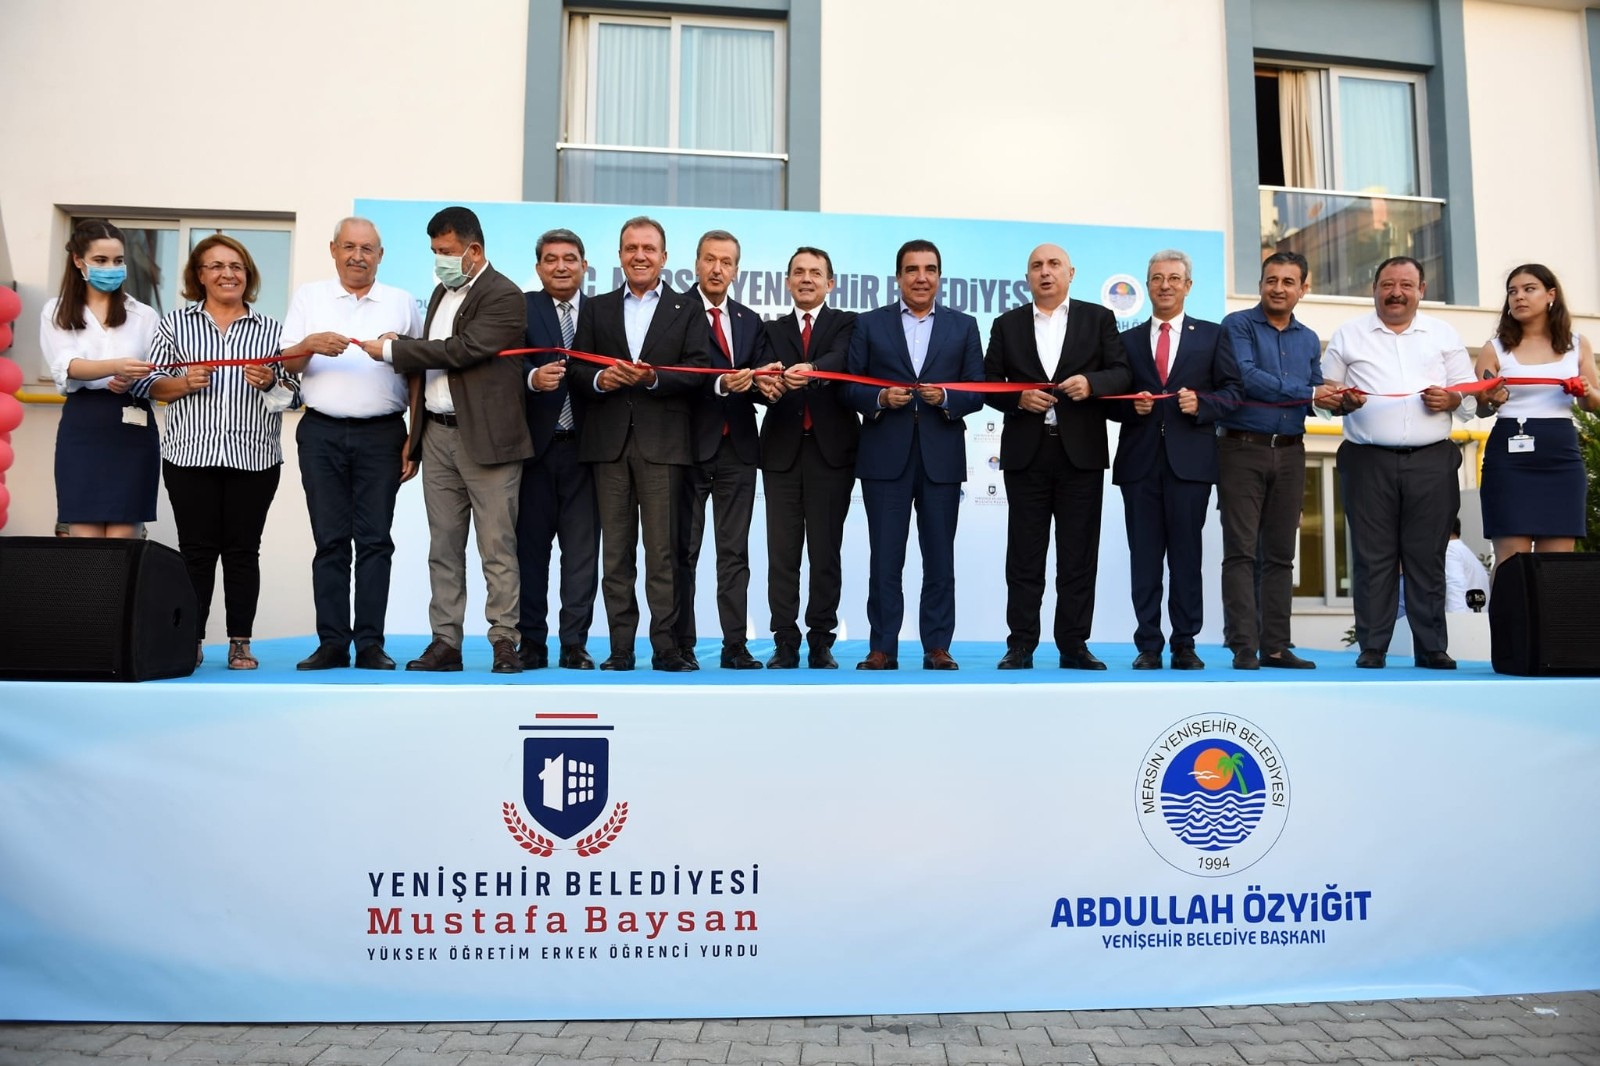 Yenişehir Belediyesi, erkek öğrenci yurdunu hizmete açtı